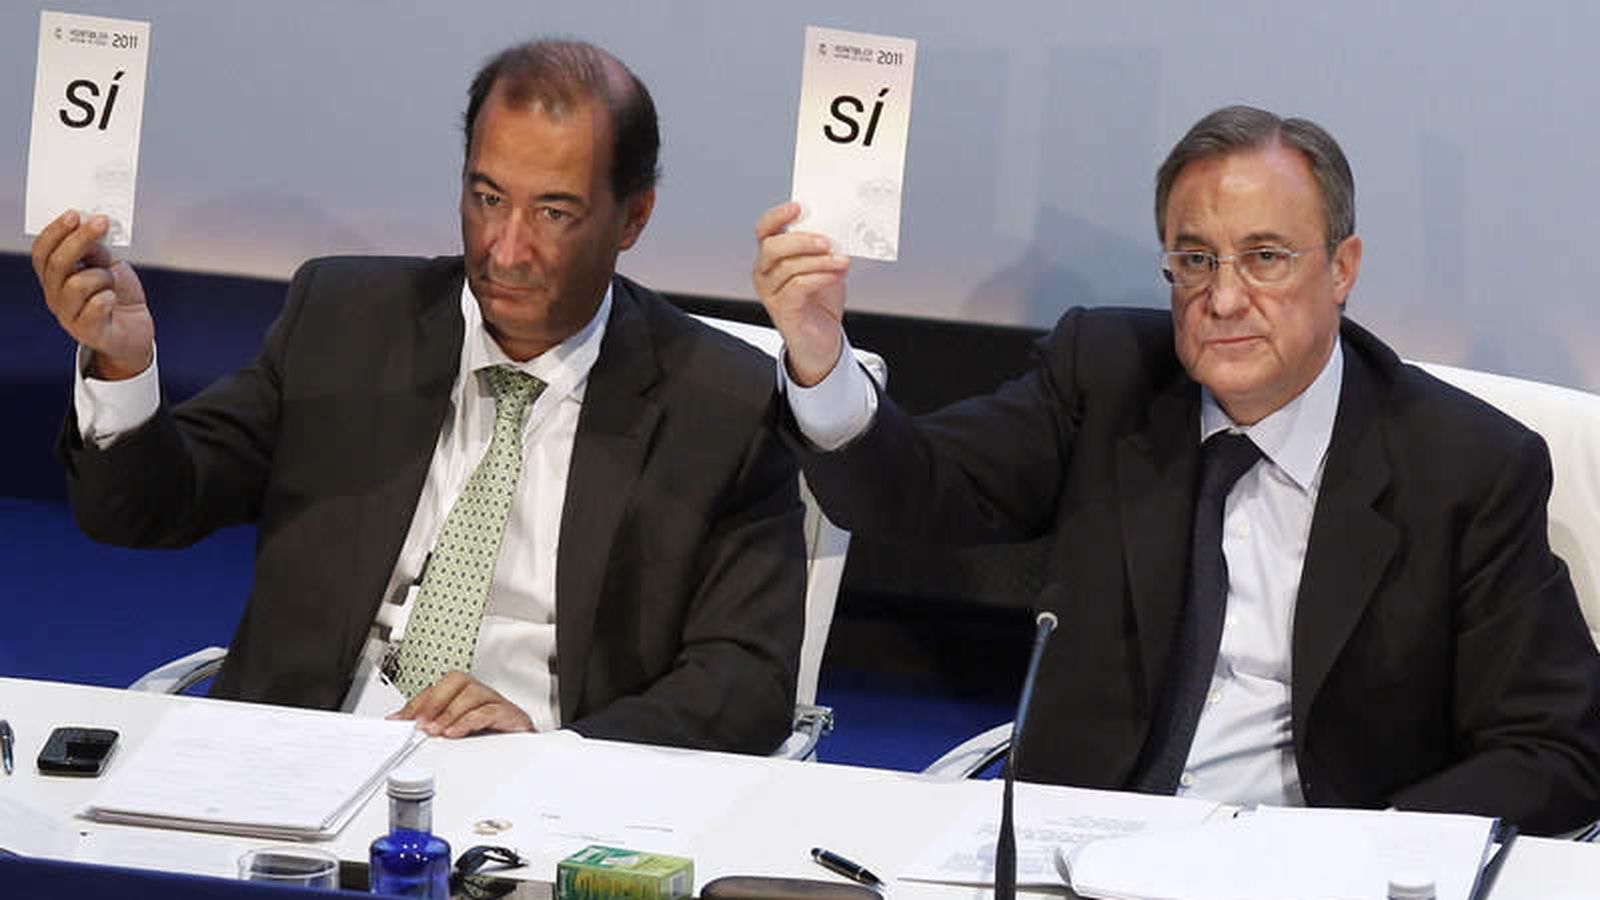 Foto: Fernández de Blas y Florentino Pérez, durante una Asamblea de socios del Real Madrid (EFE)